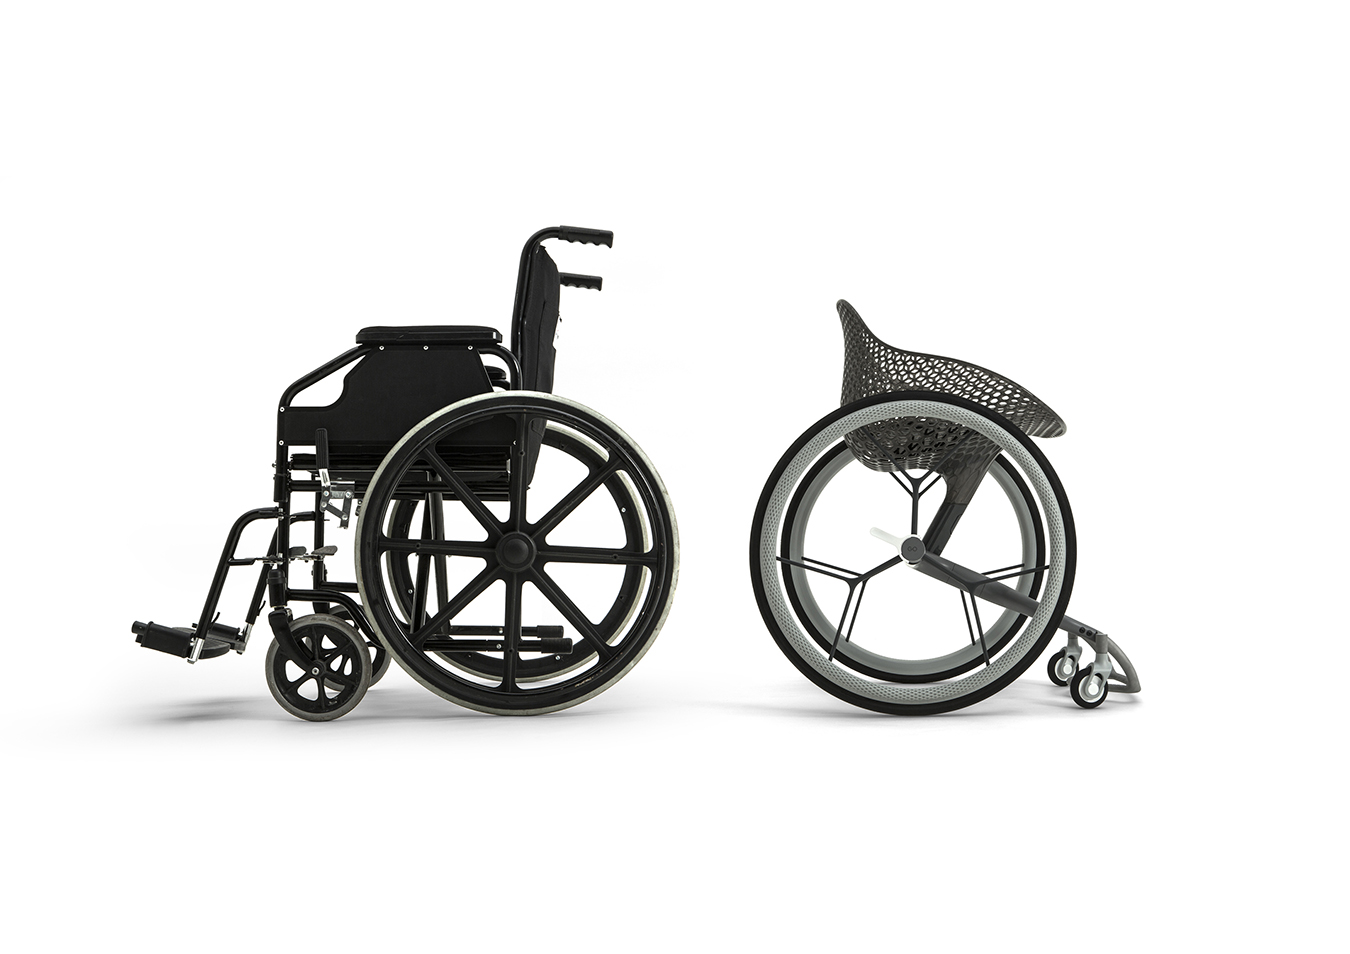 Impresión 3D personalizada de silla de ruedas GO